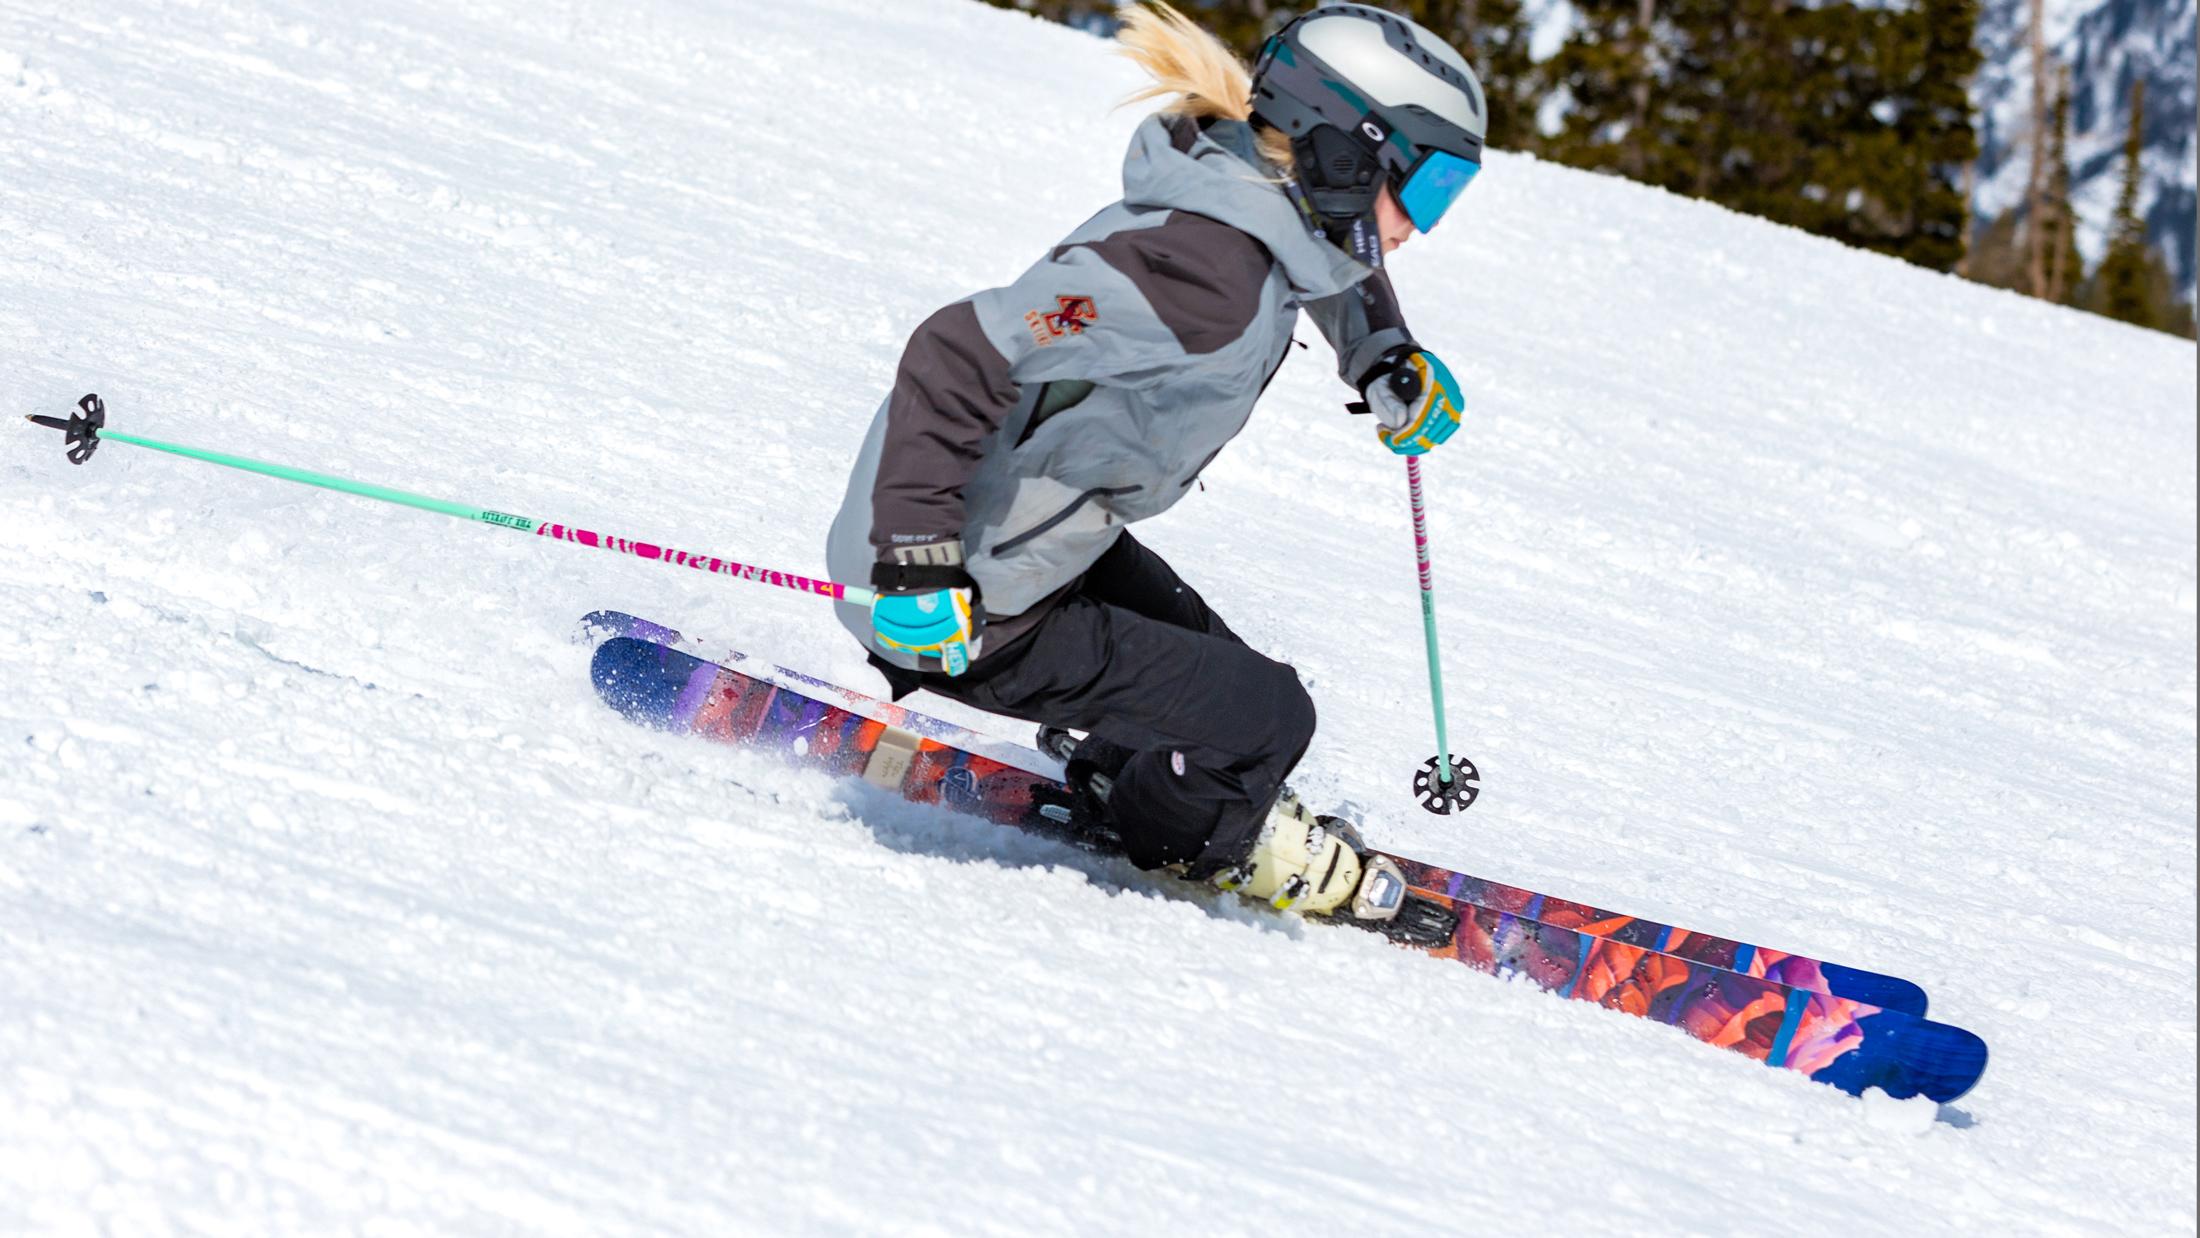 The Fastforward "BADLANDS" Corinne Weidmann x J Collab Limited Edition Ski Shredding Image